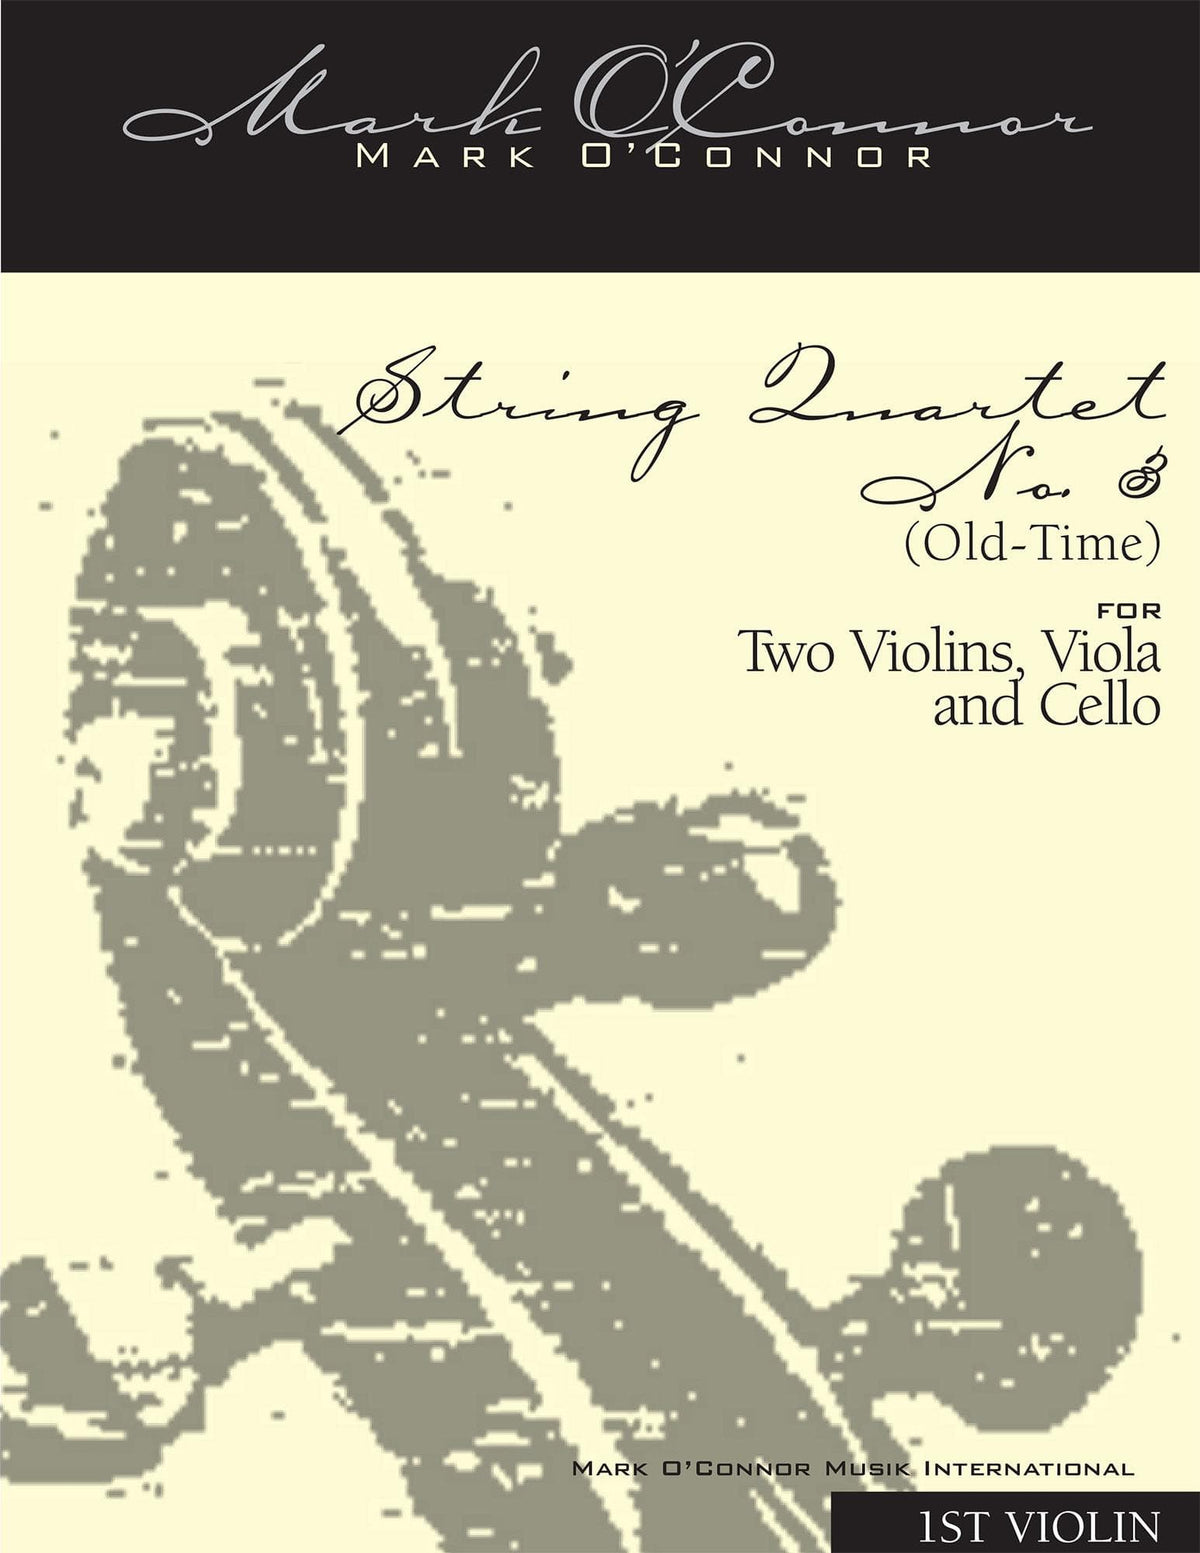 O'Connor, Mark - String Quartet No. 3 (Old-Time) for 2 Violins, Viola, and Cello - Violin 1 - Digital Download